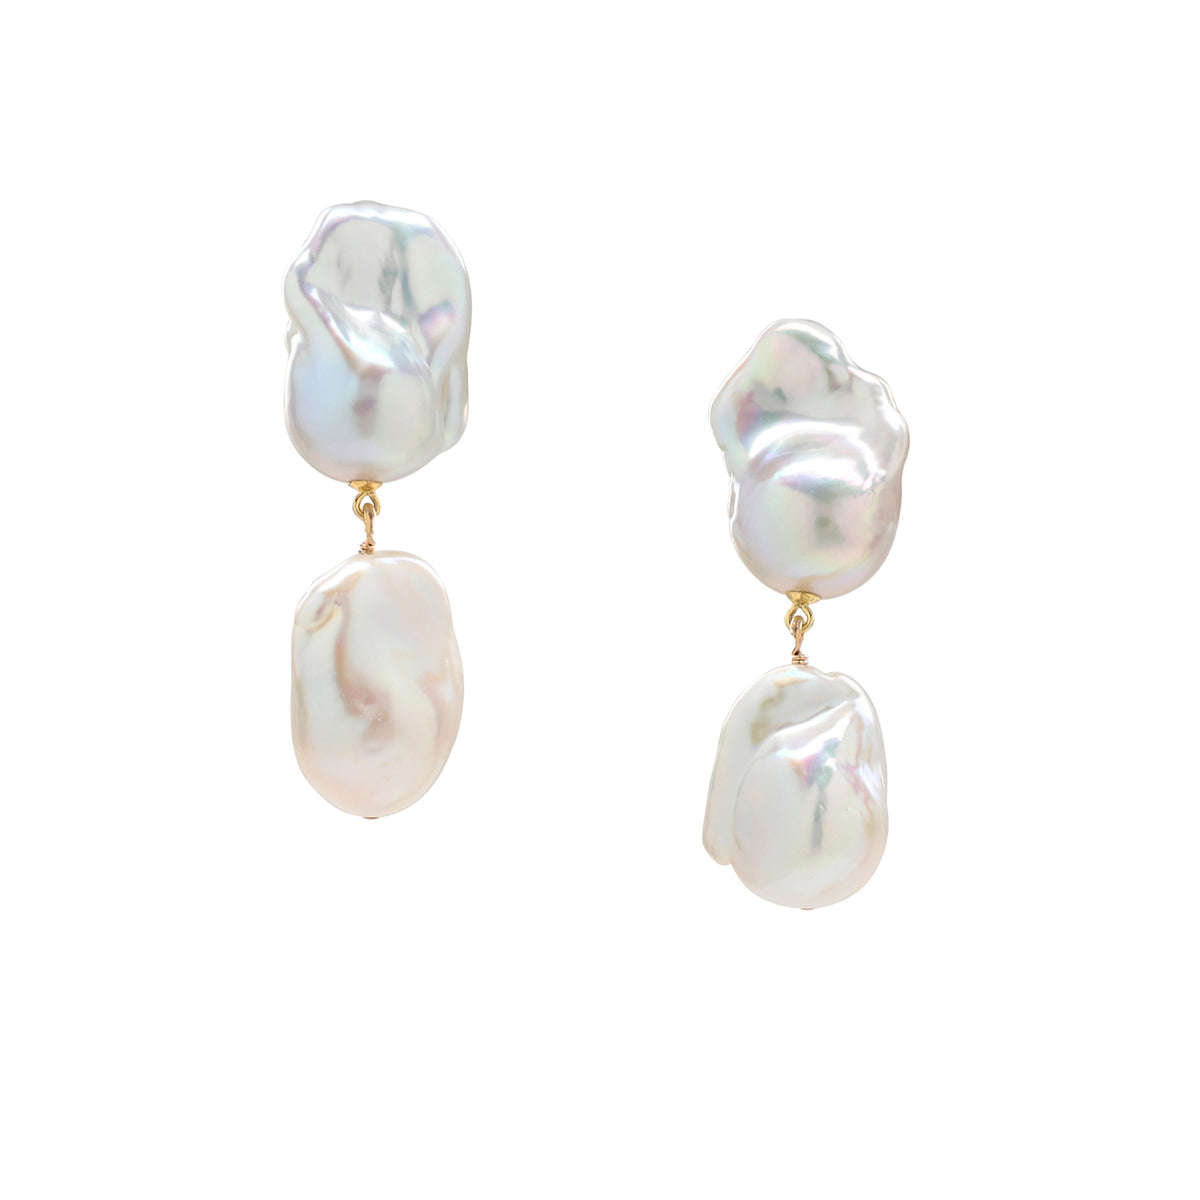 Double Baroque Pearl Earrings